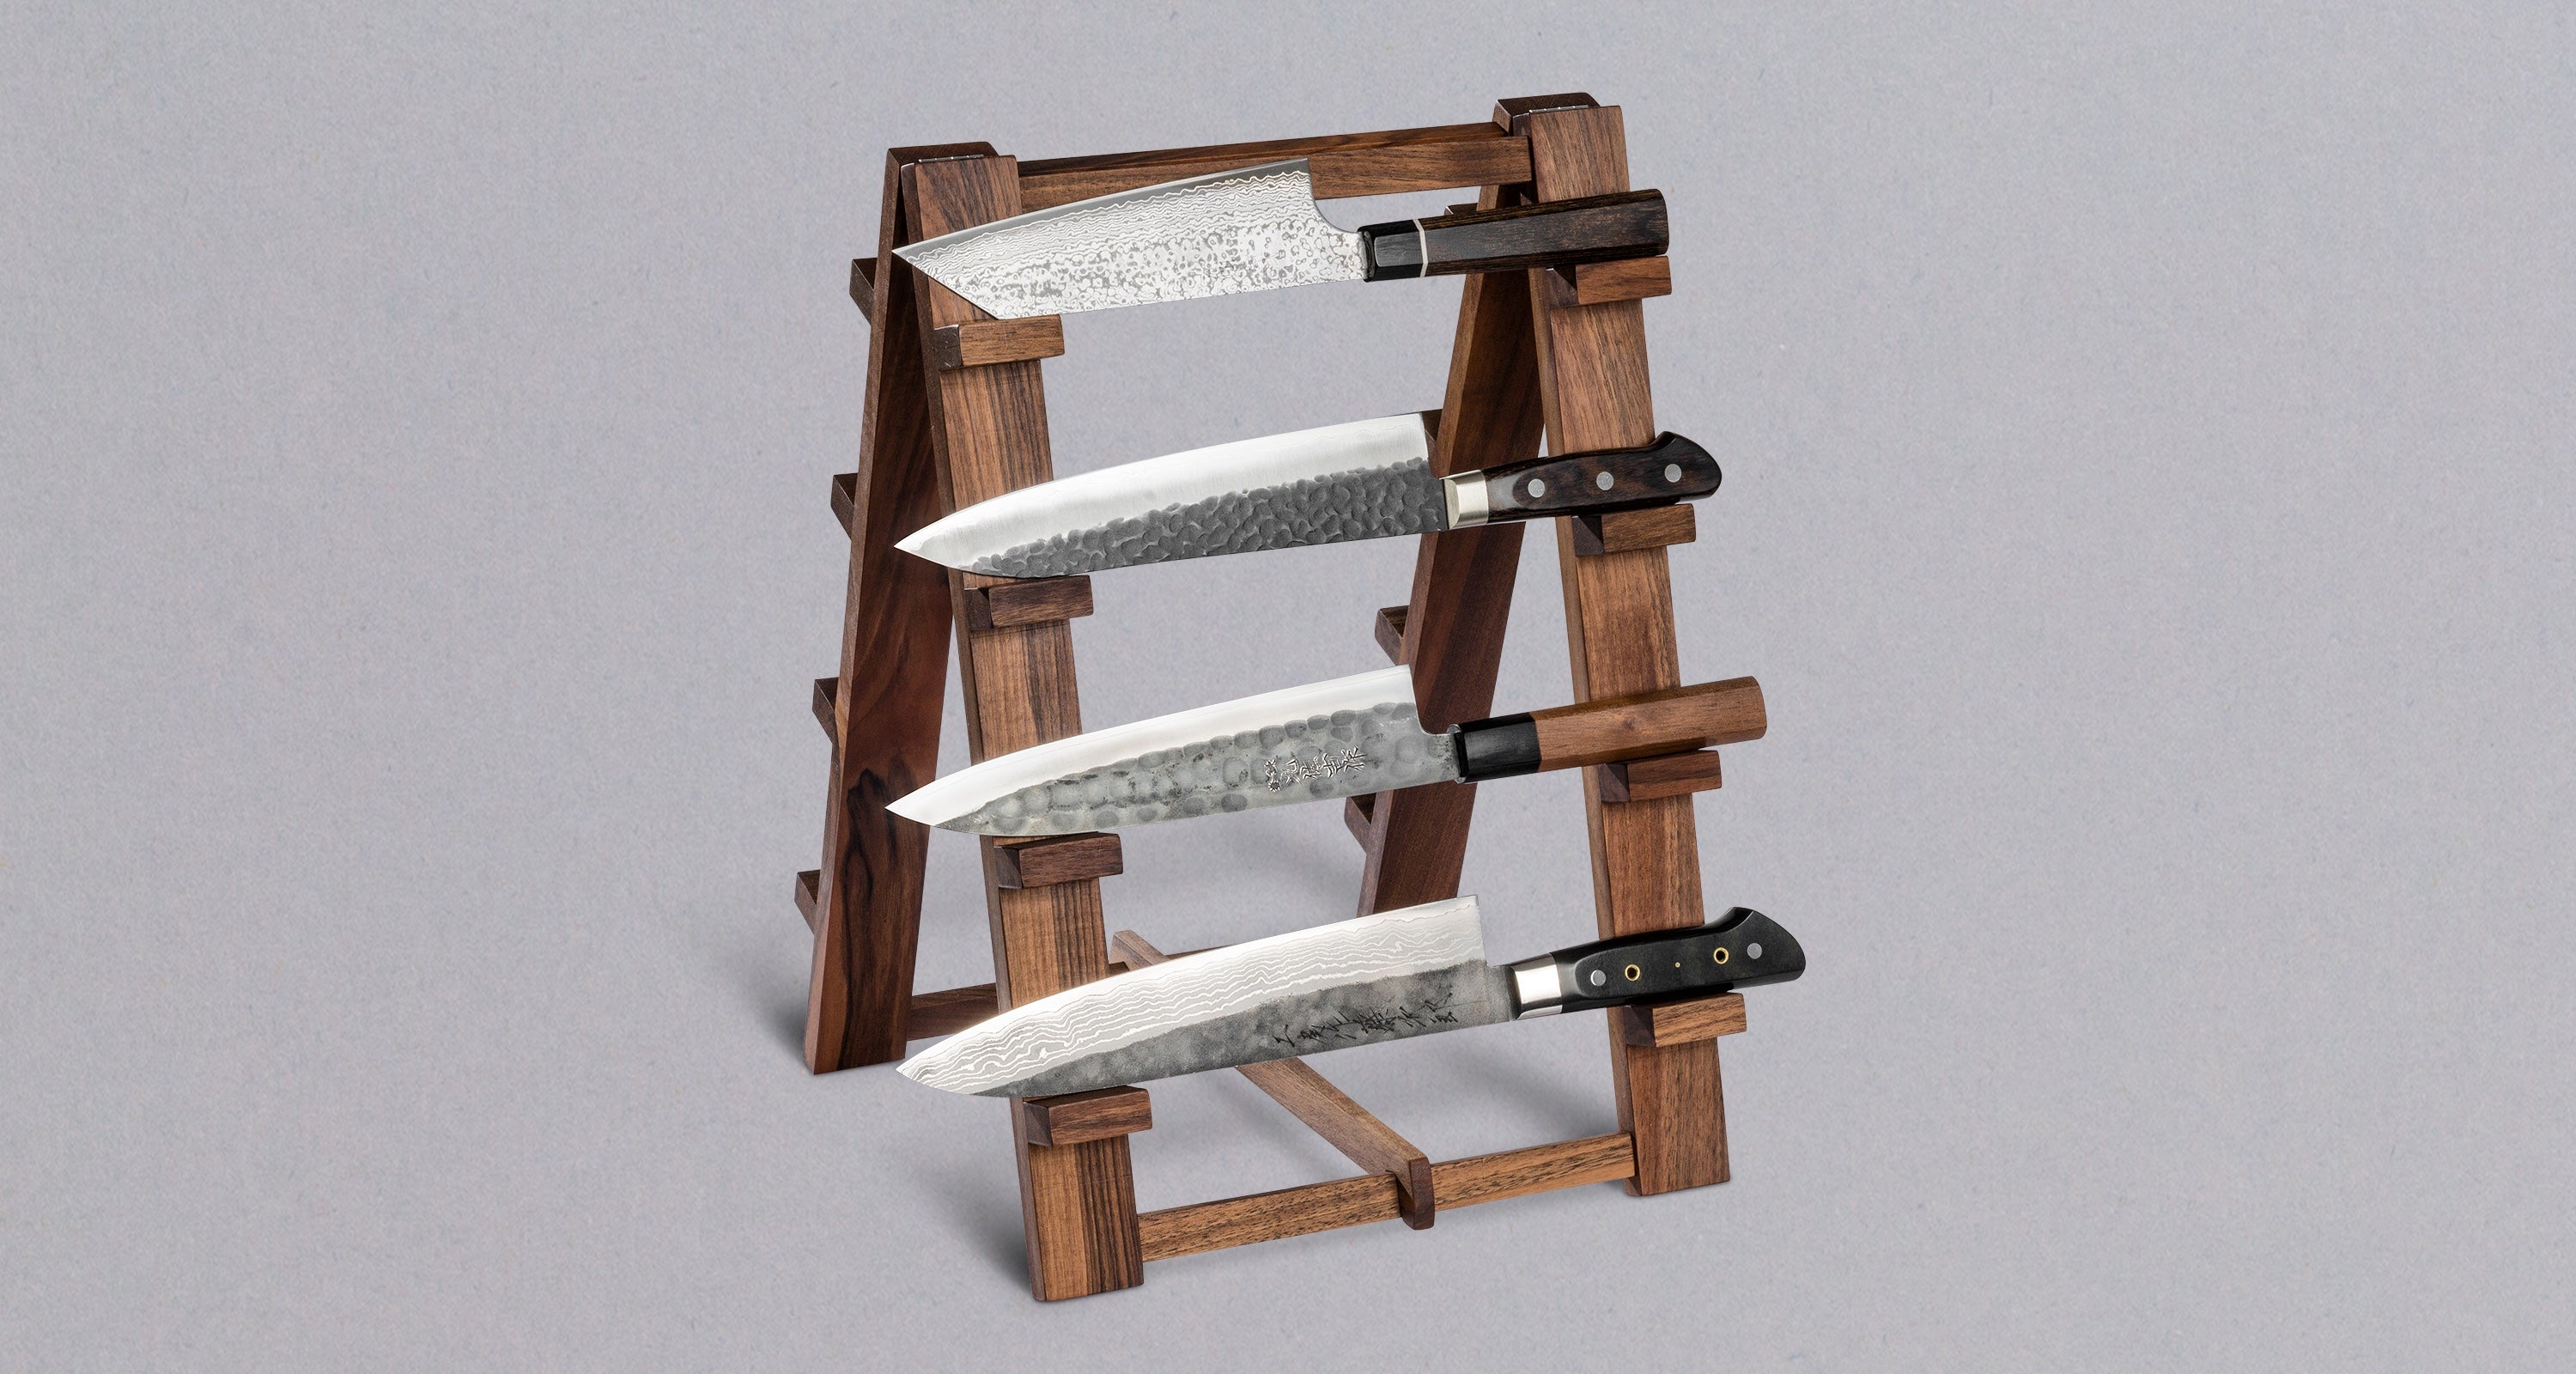 Soporte para cuchillos de madera ❘ Westwing